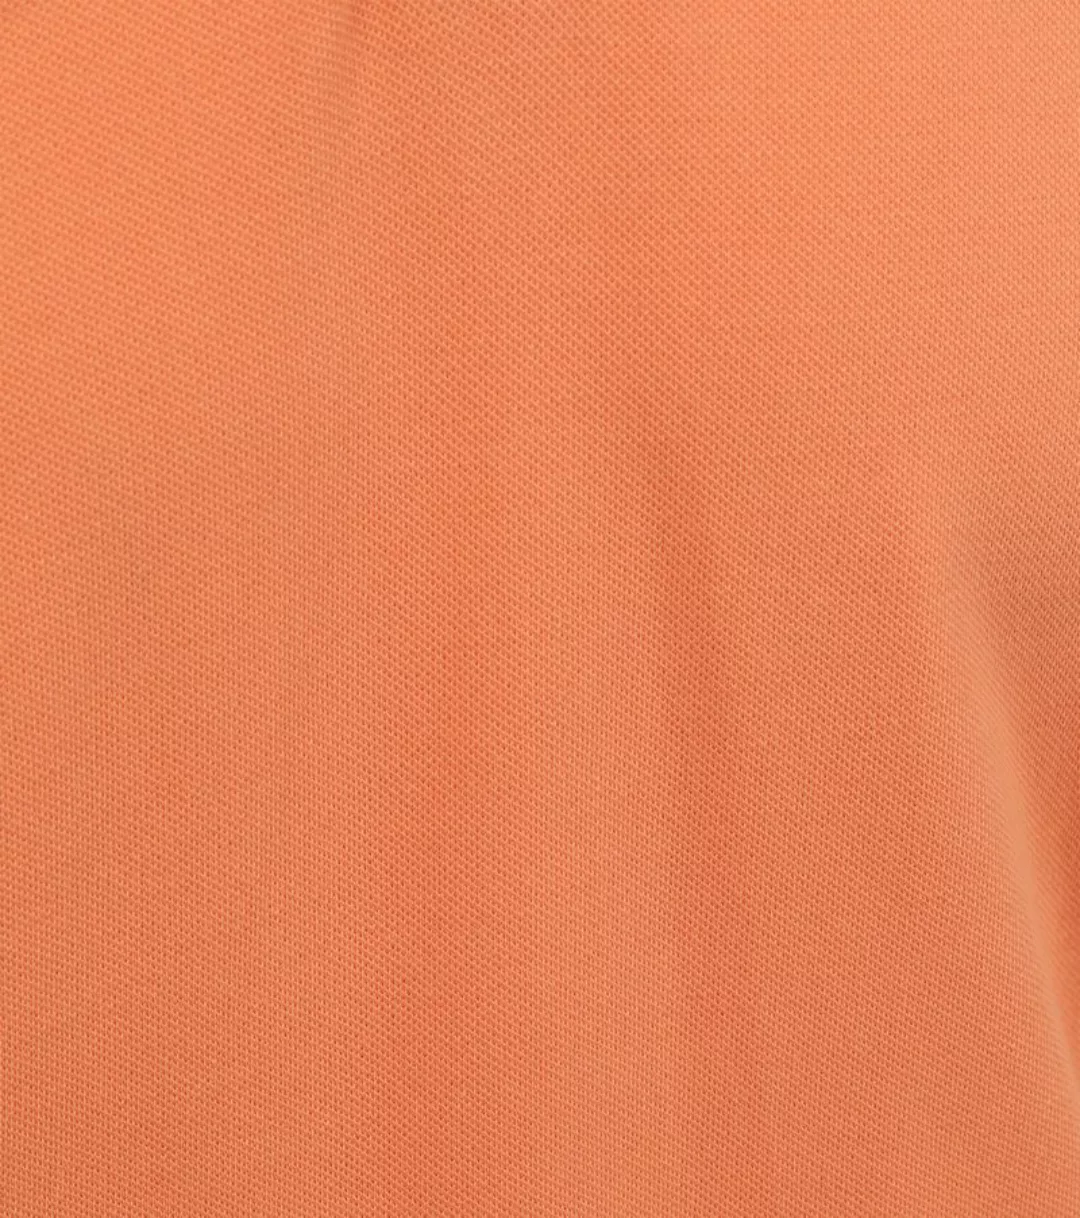 Suitable Kick Poloshirt Orange - Größe XXL günstig online kaufen